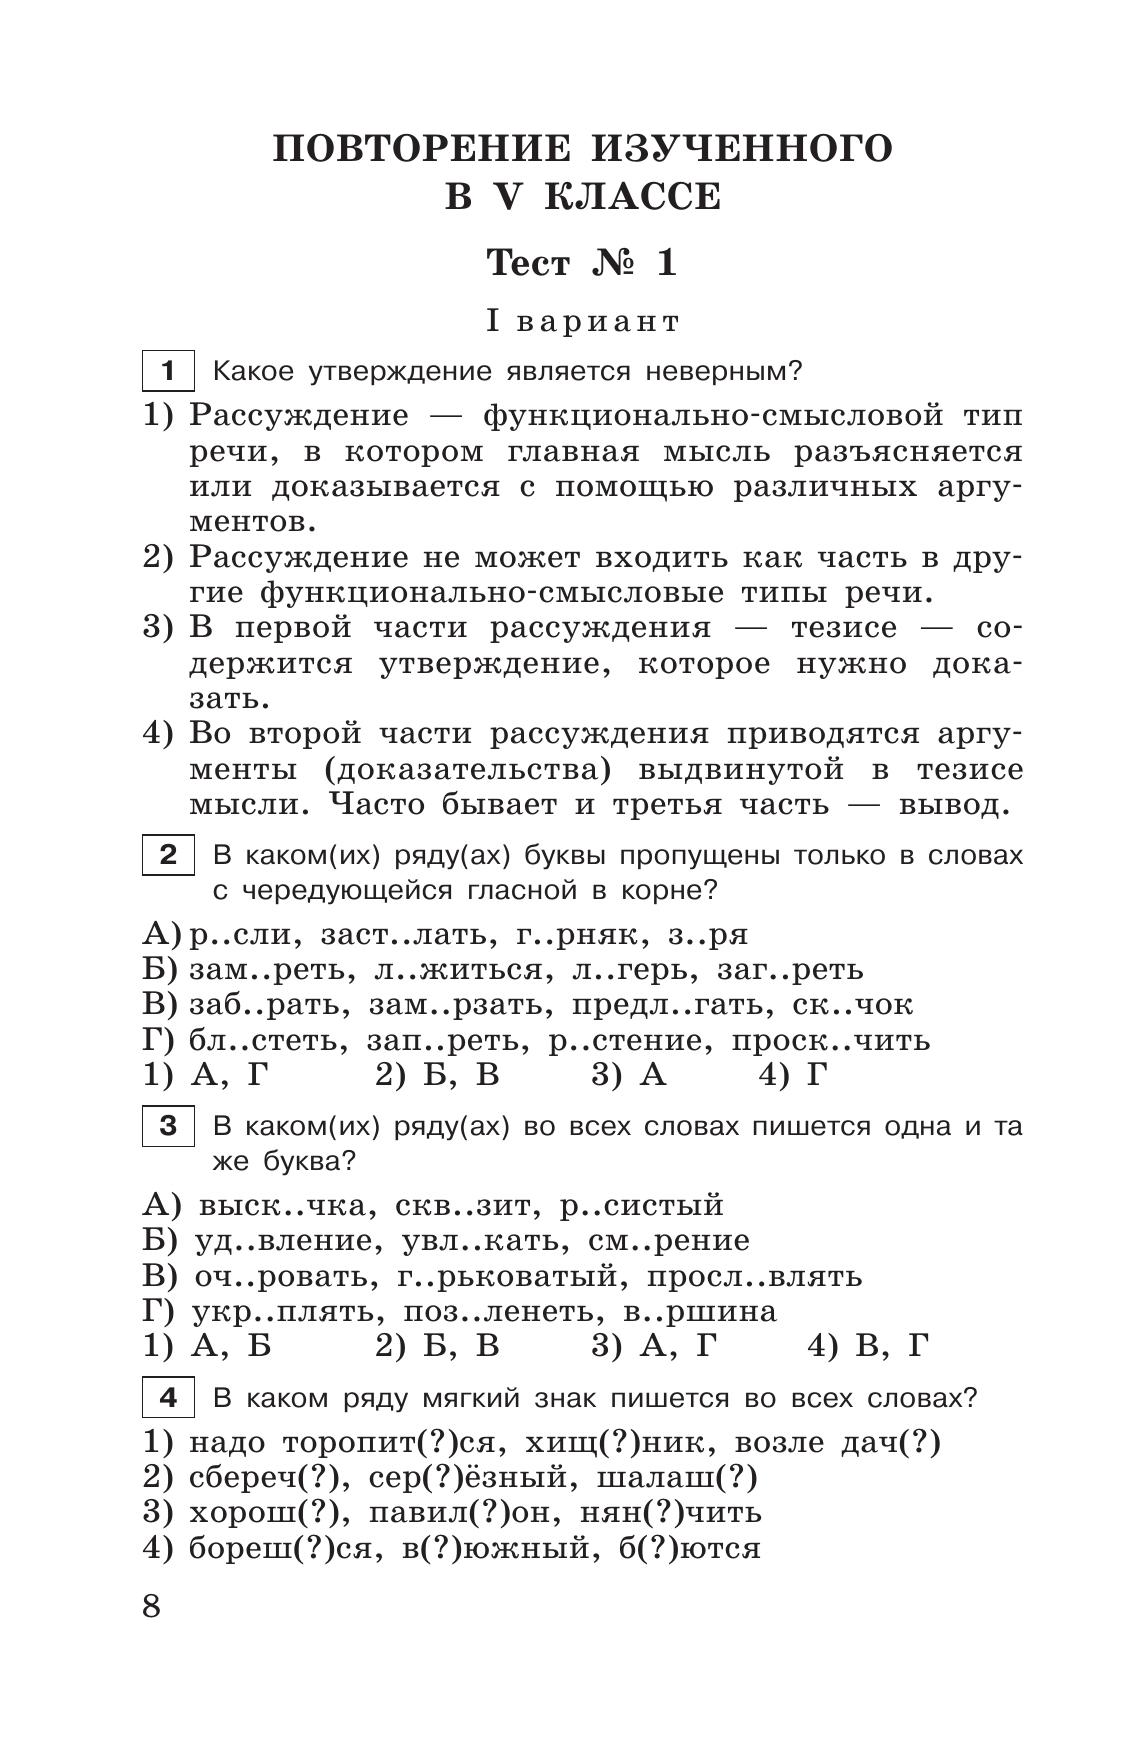 Тестовые задания по русскому языку. 6 класс. 2